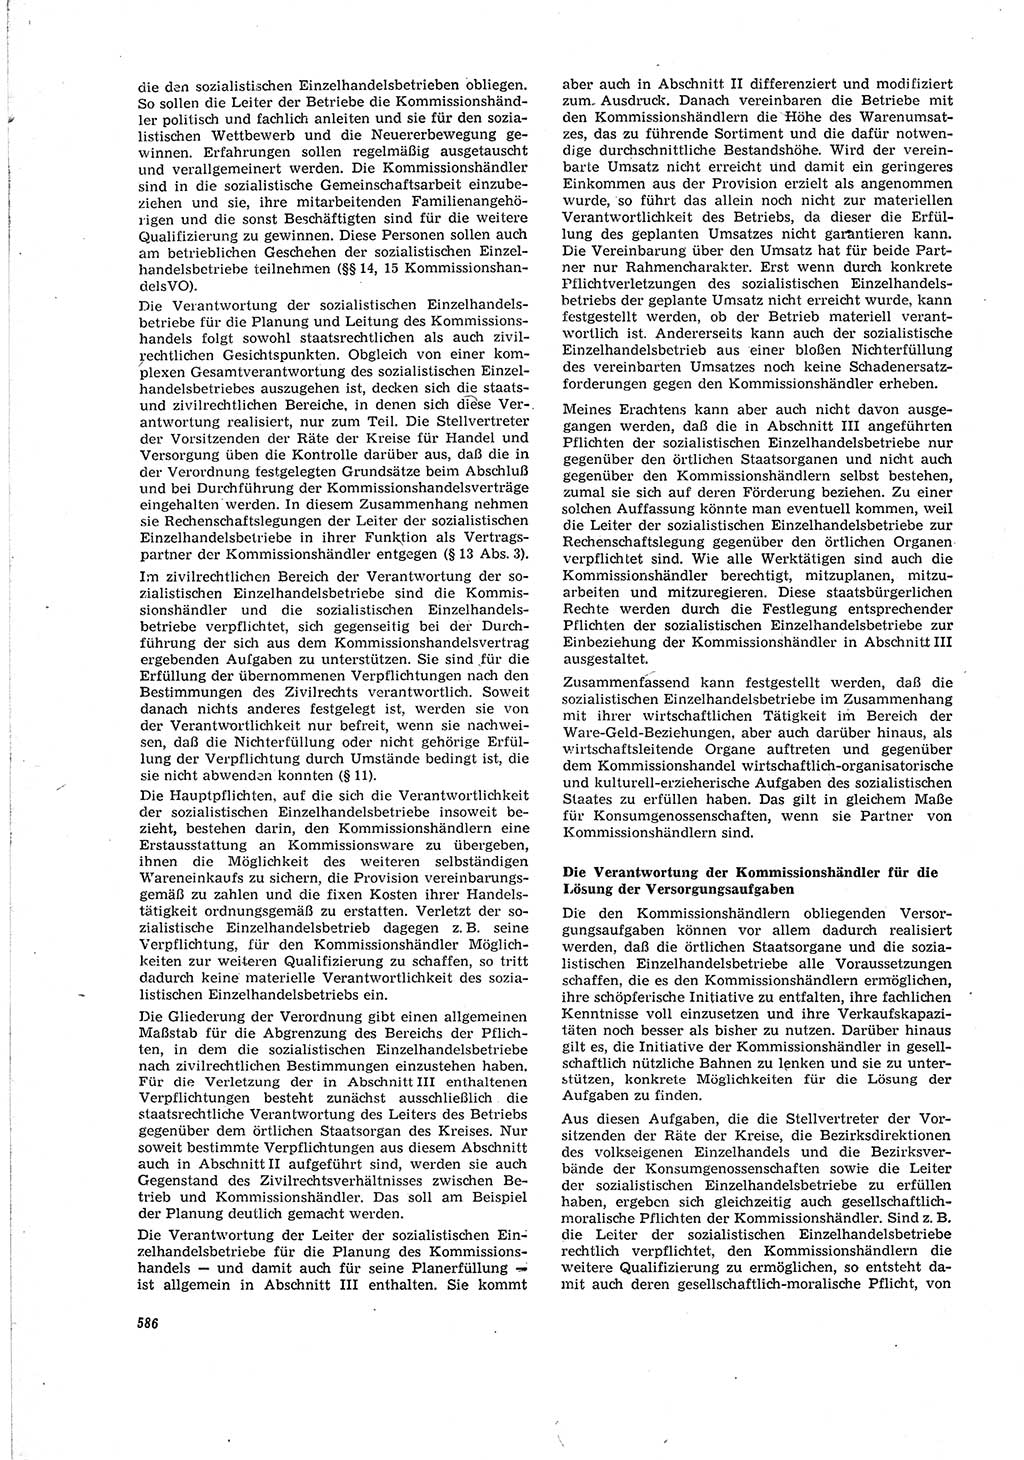 Neue Justiz (NJ), Zeitschrift für Recht und Rechtswissenschaft [Deutsche Demokratische Republik (DDR)], 20. Jahrgang 1966, Seite 586 (NJ DDR 1966, S. 586)